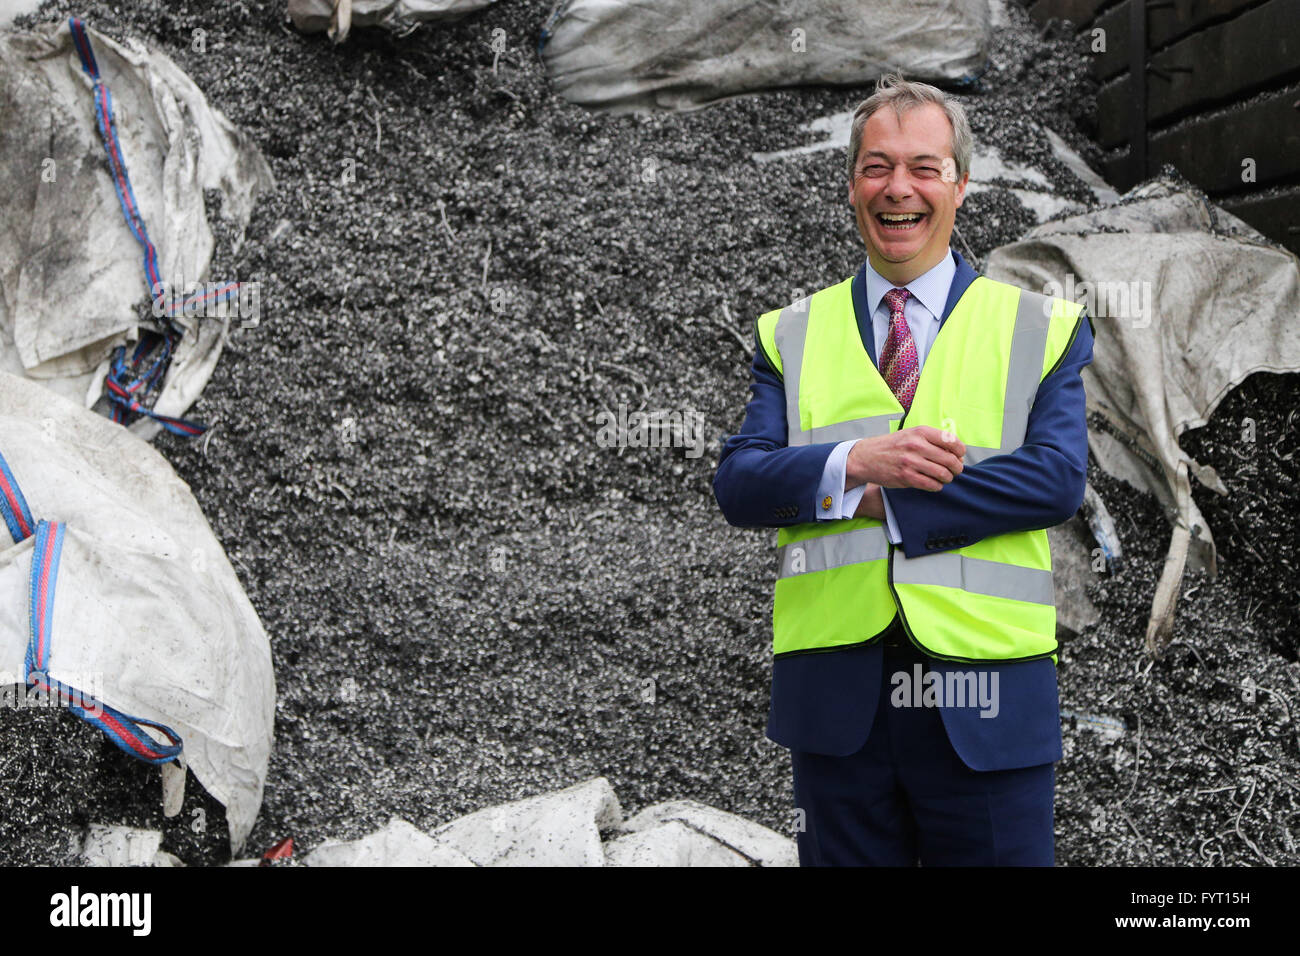 Leader UKIP Nigel Farage su una visita a Sheffield in south yorkshire, Regno Unito. Foto Stock